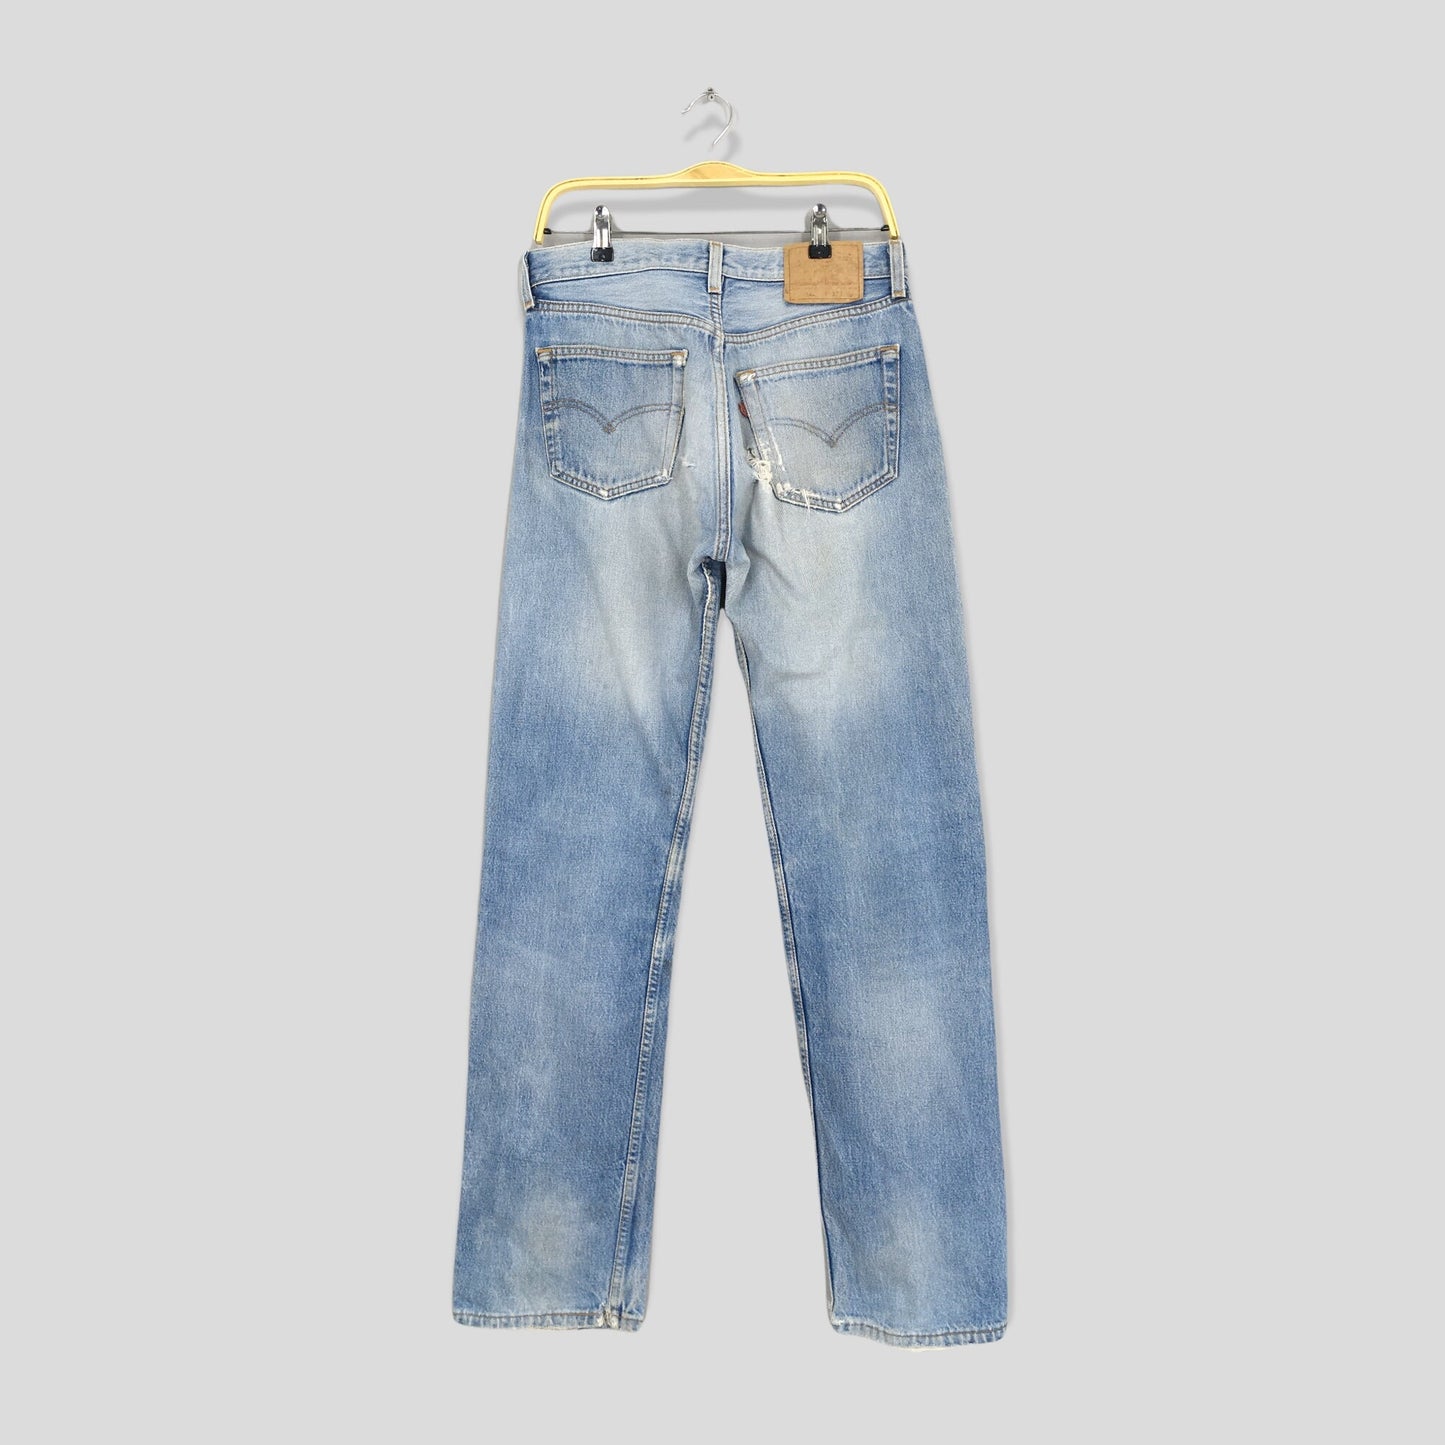 Levis 501XX Blue Acid Distressed Jeans Size 30x33